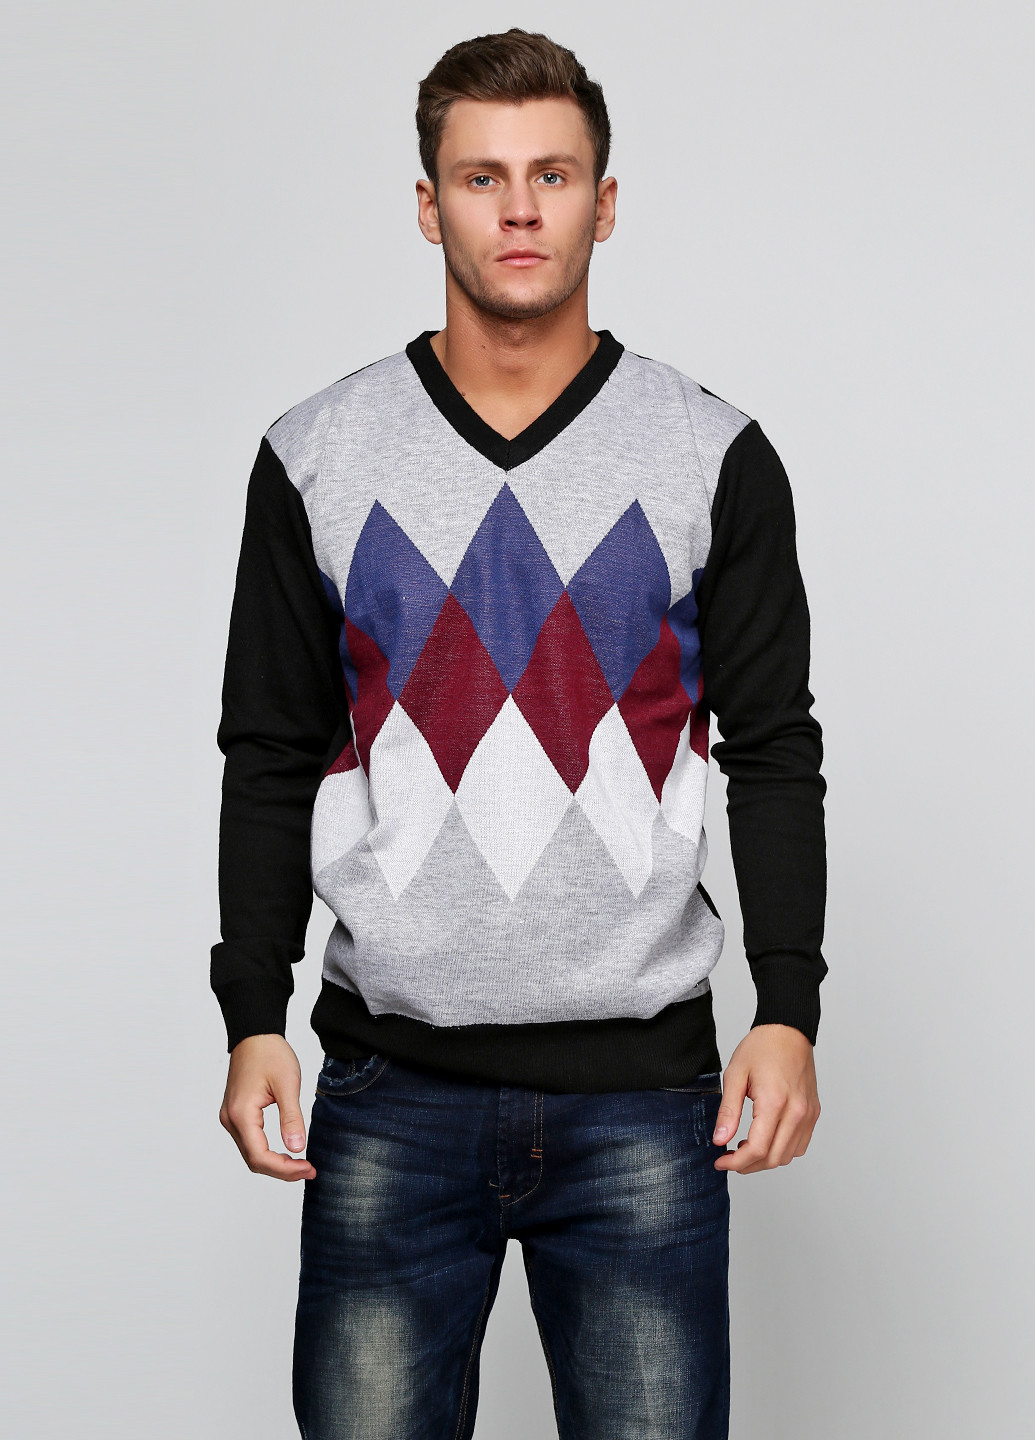 Светло-серый демисезонный пуловер пуловер Pierre Cardin